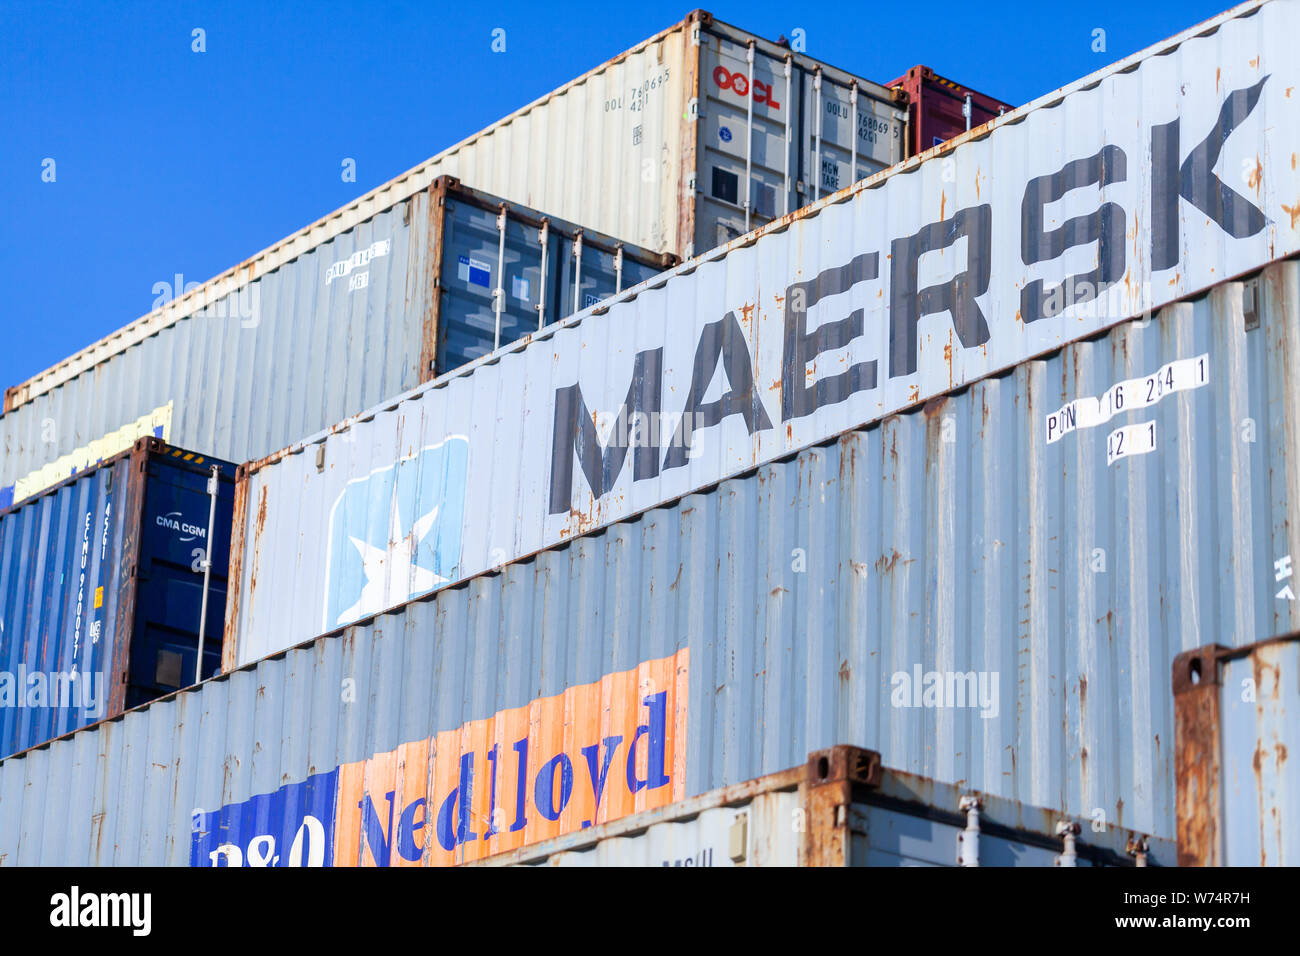 Nürnberg/Deutschland - August 4, 2019: Container steht auf TriCon Container-terminal Nürnberg. Stockfoto